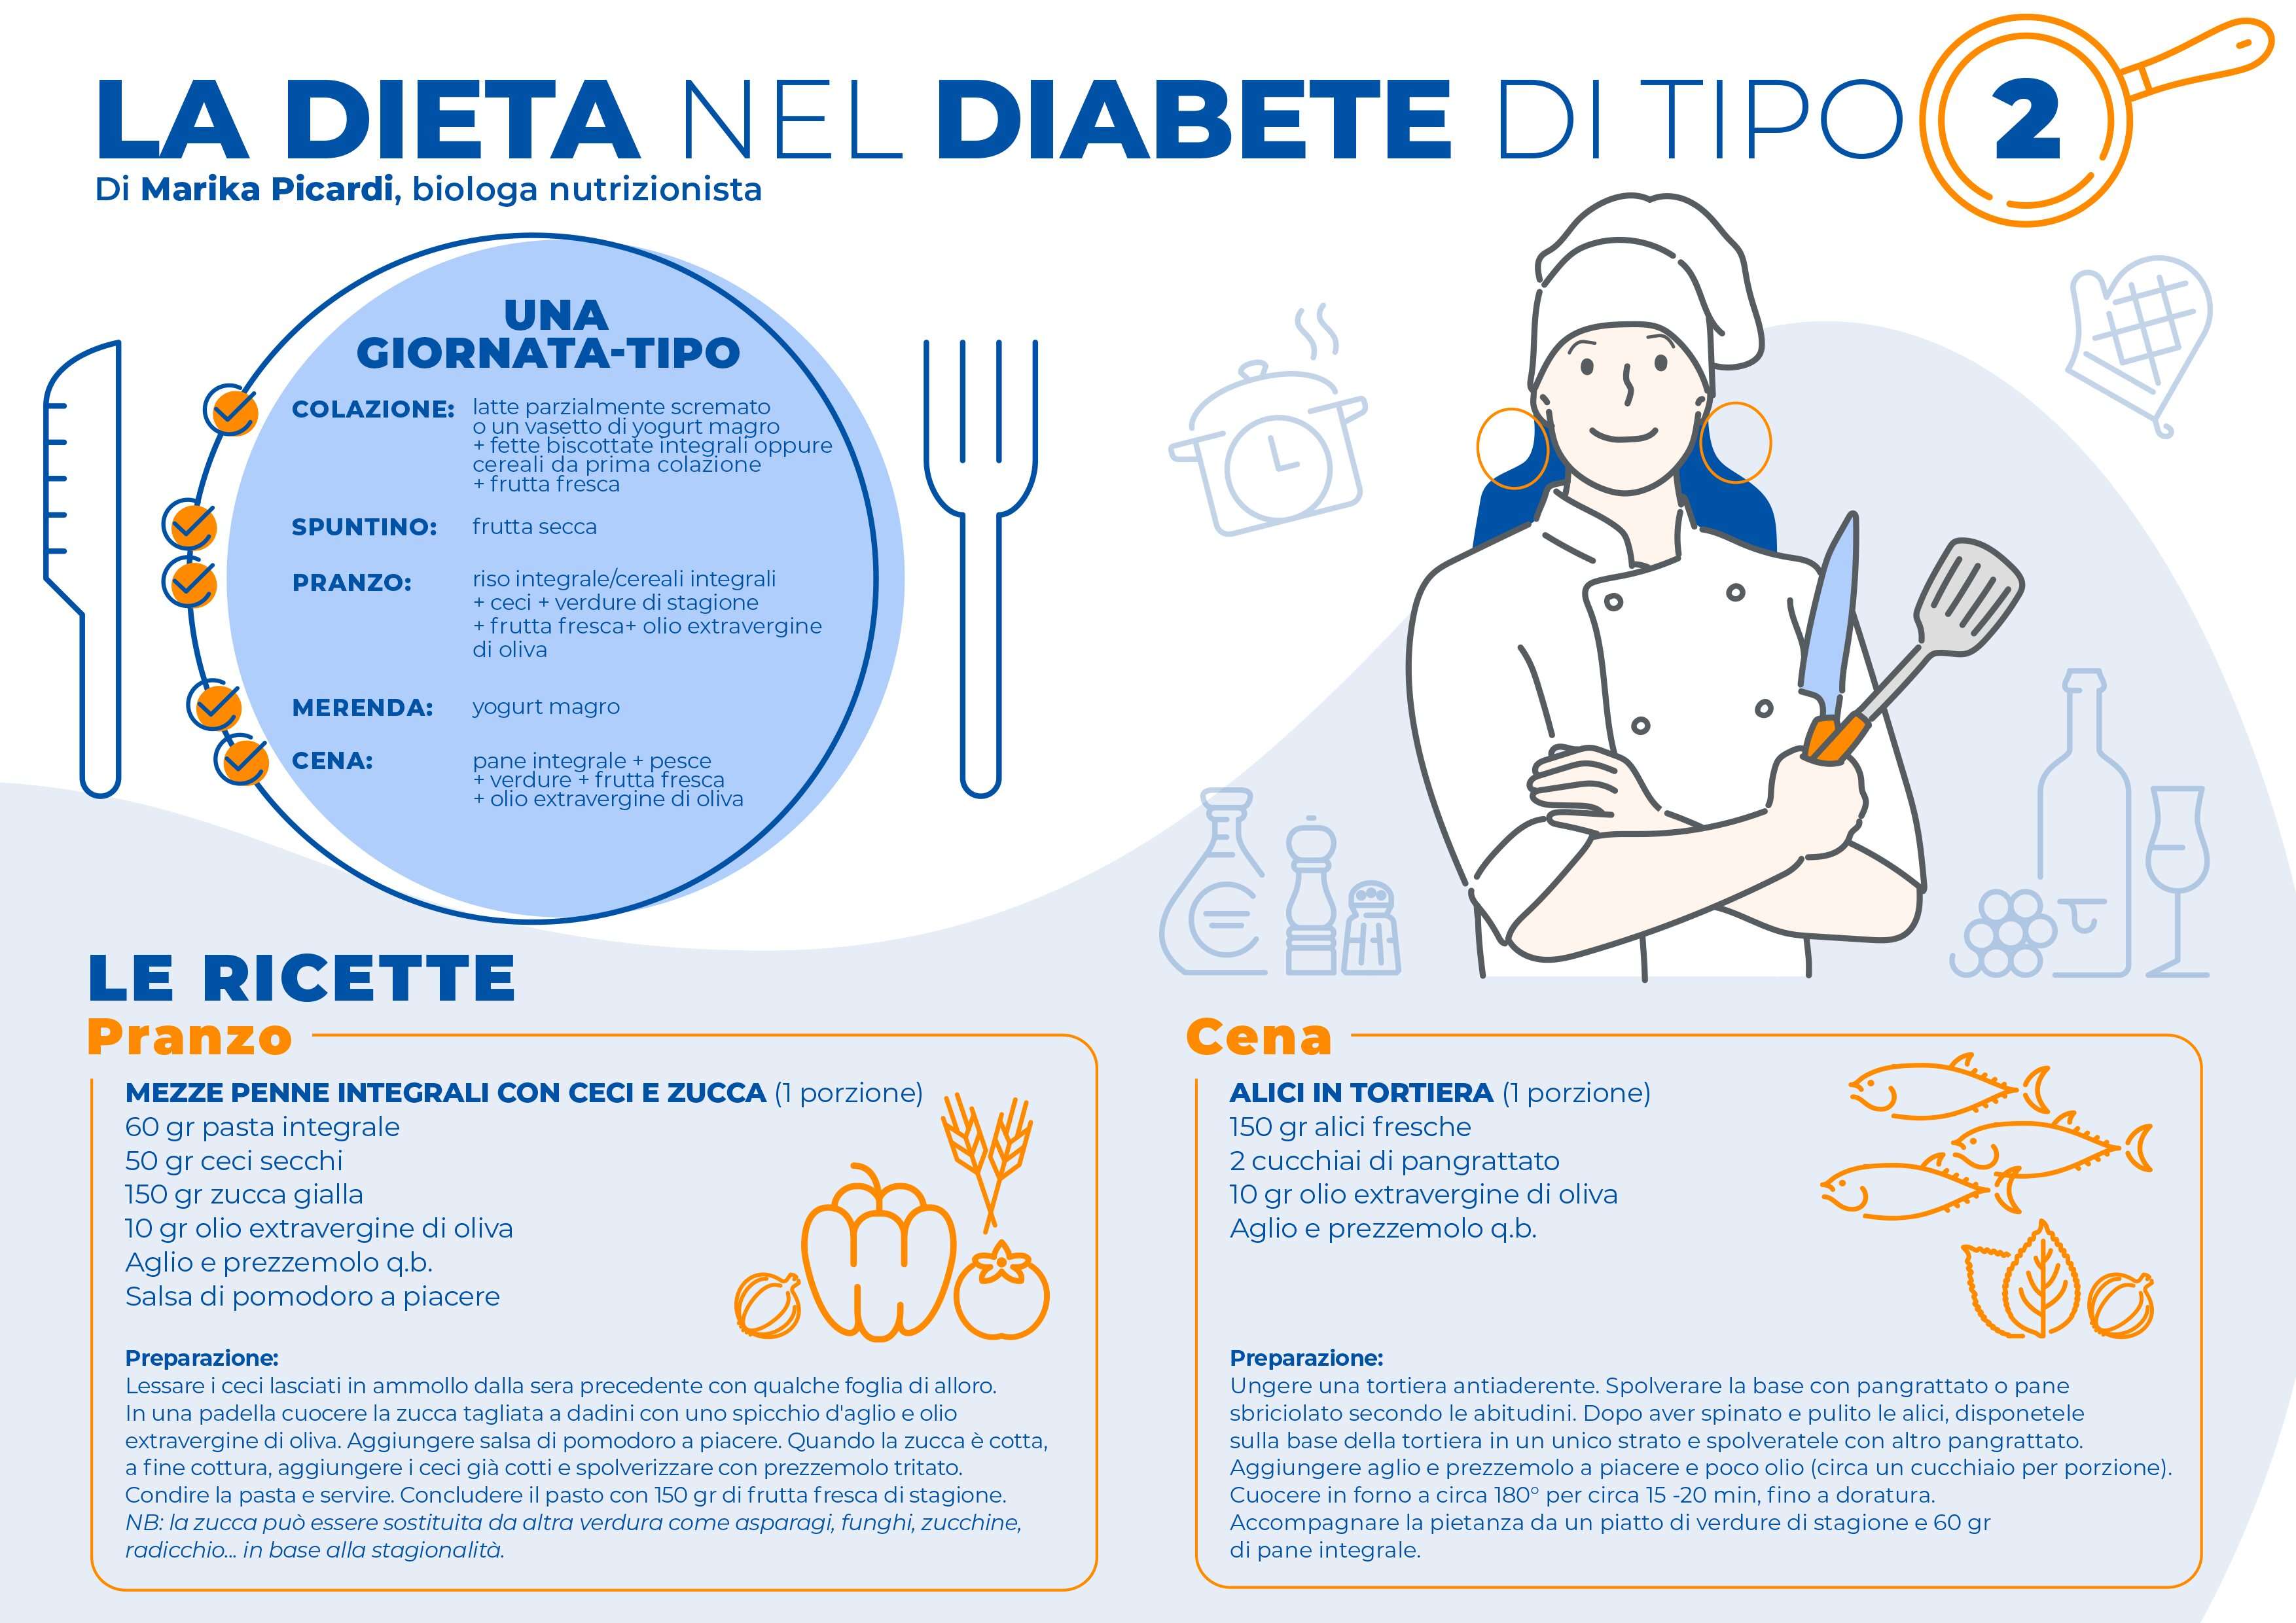 Diabete di tipo 2: esiste una dieta per regolamentarlo?